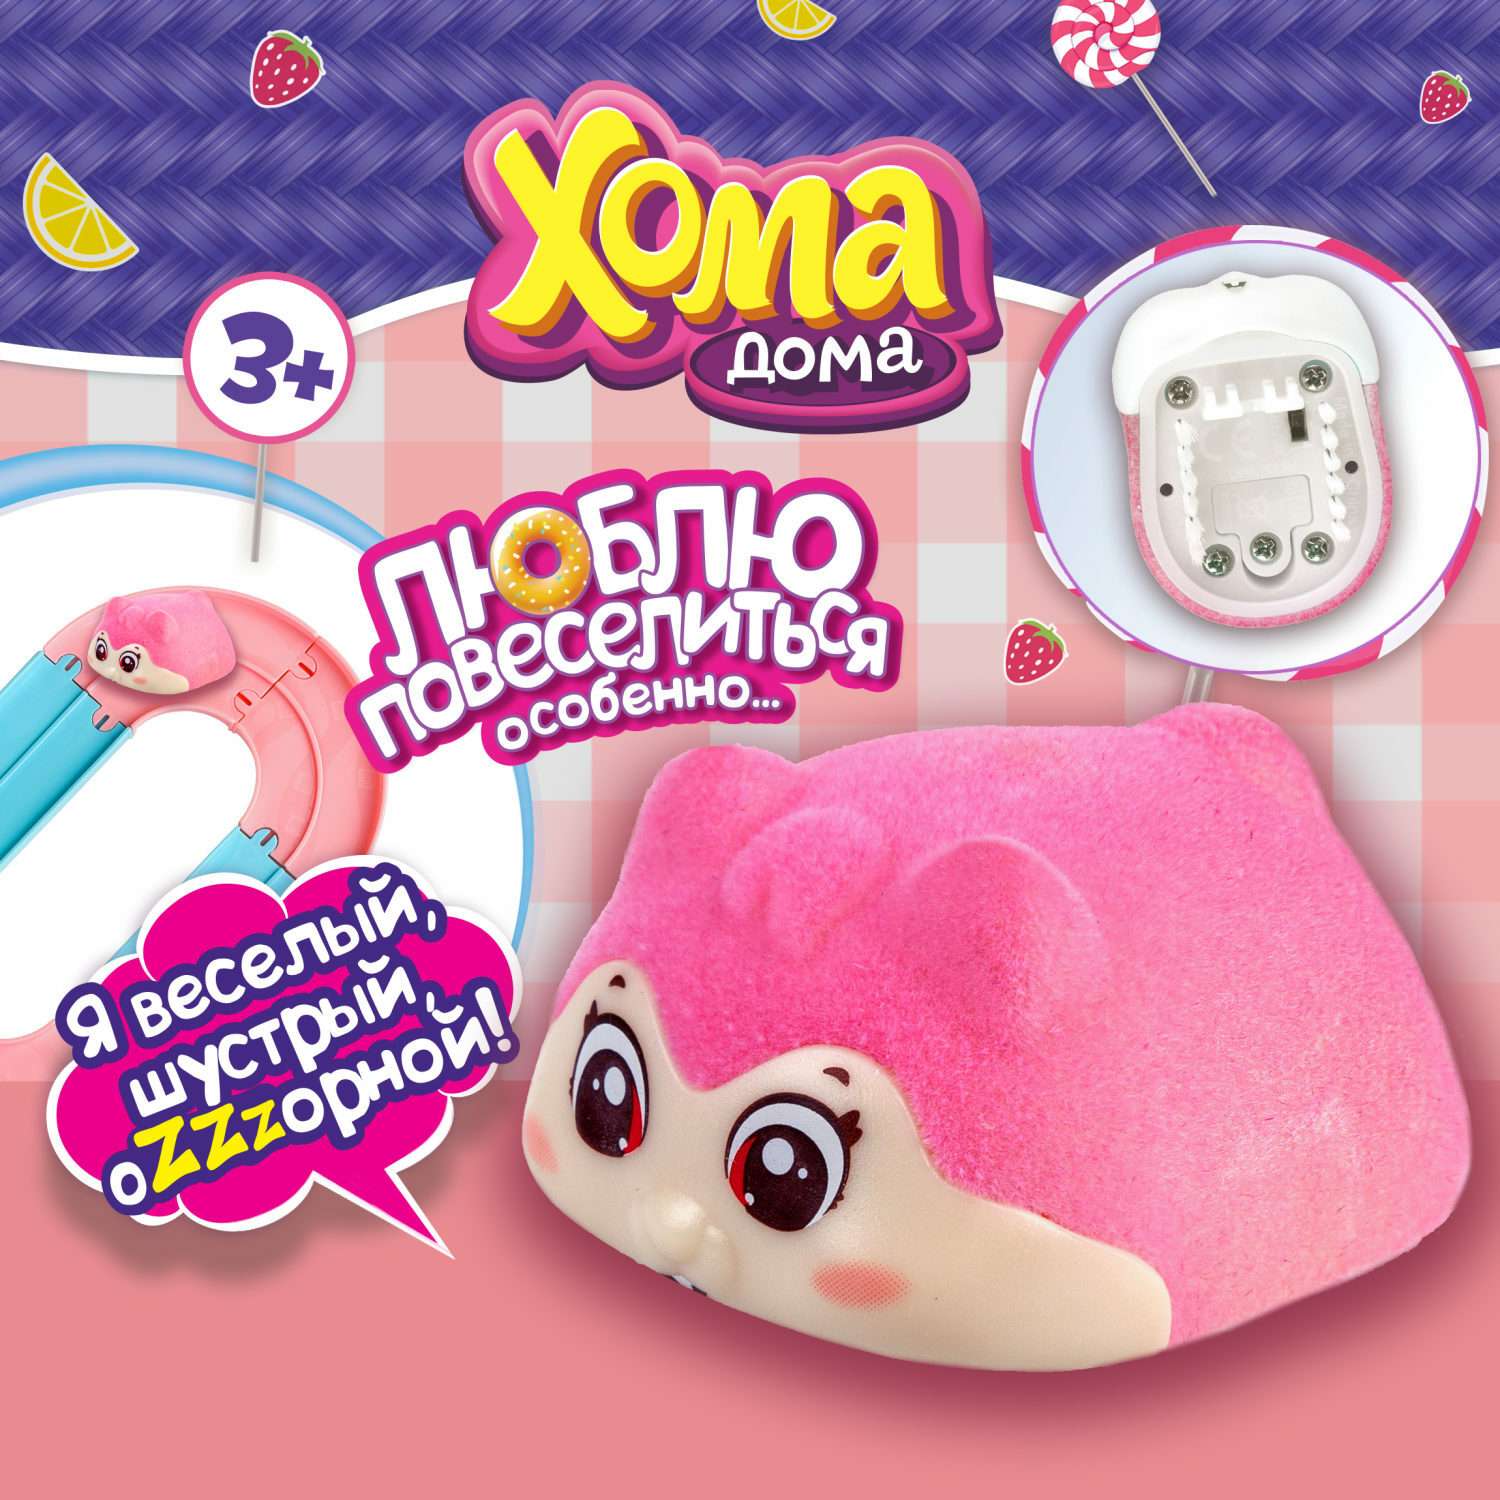 Интерактивная игрушка Хома Дома Хомячок флокированный розовый - фото 1